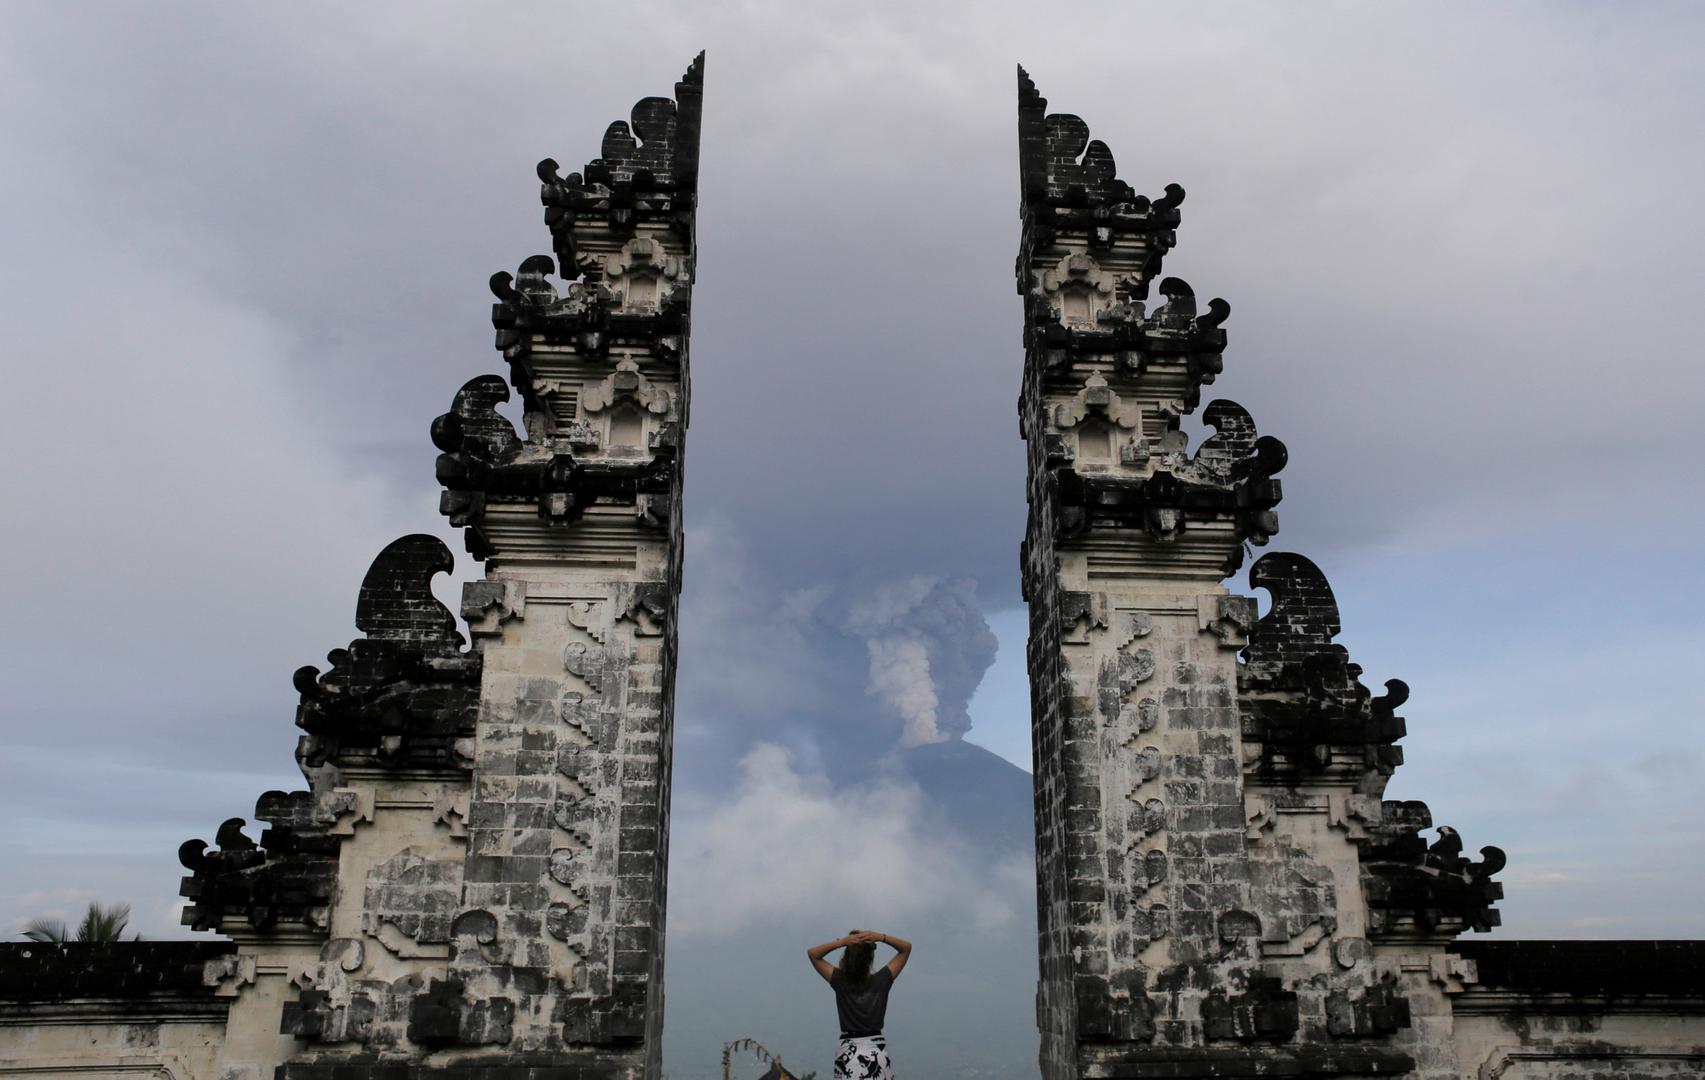 Deseci tisuća stanovnika indonezijskog otoka Balija pobjegli su iz kuća zbog neposredne opasnosti od velike erupcije Agunga, vulkana koji je aktivan već nekoliko dana i ispušta veliki sivi dim.